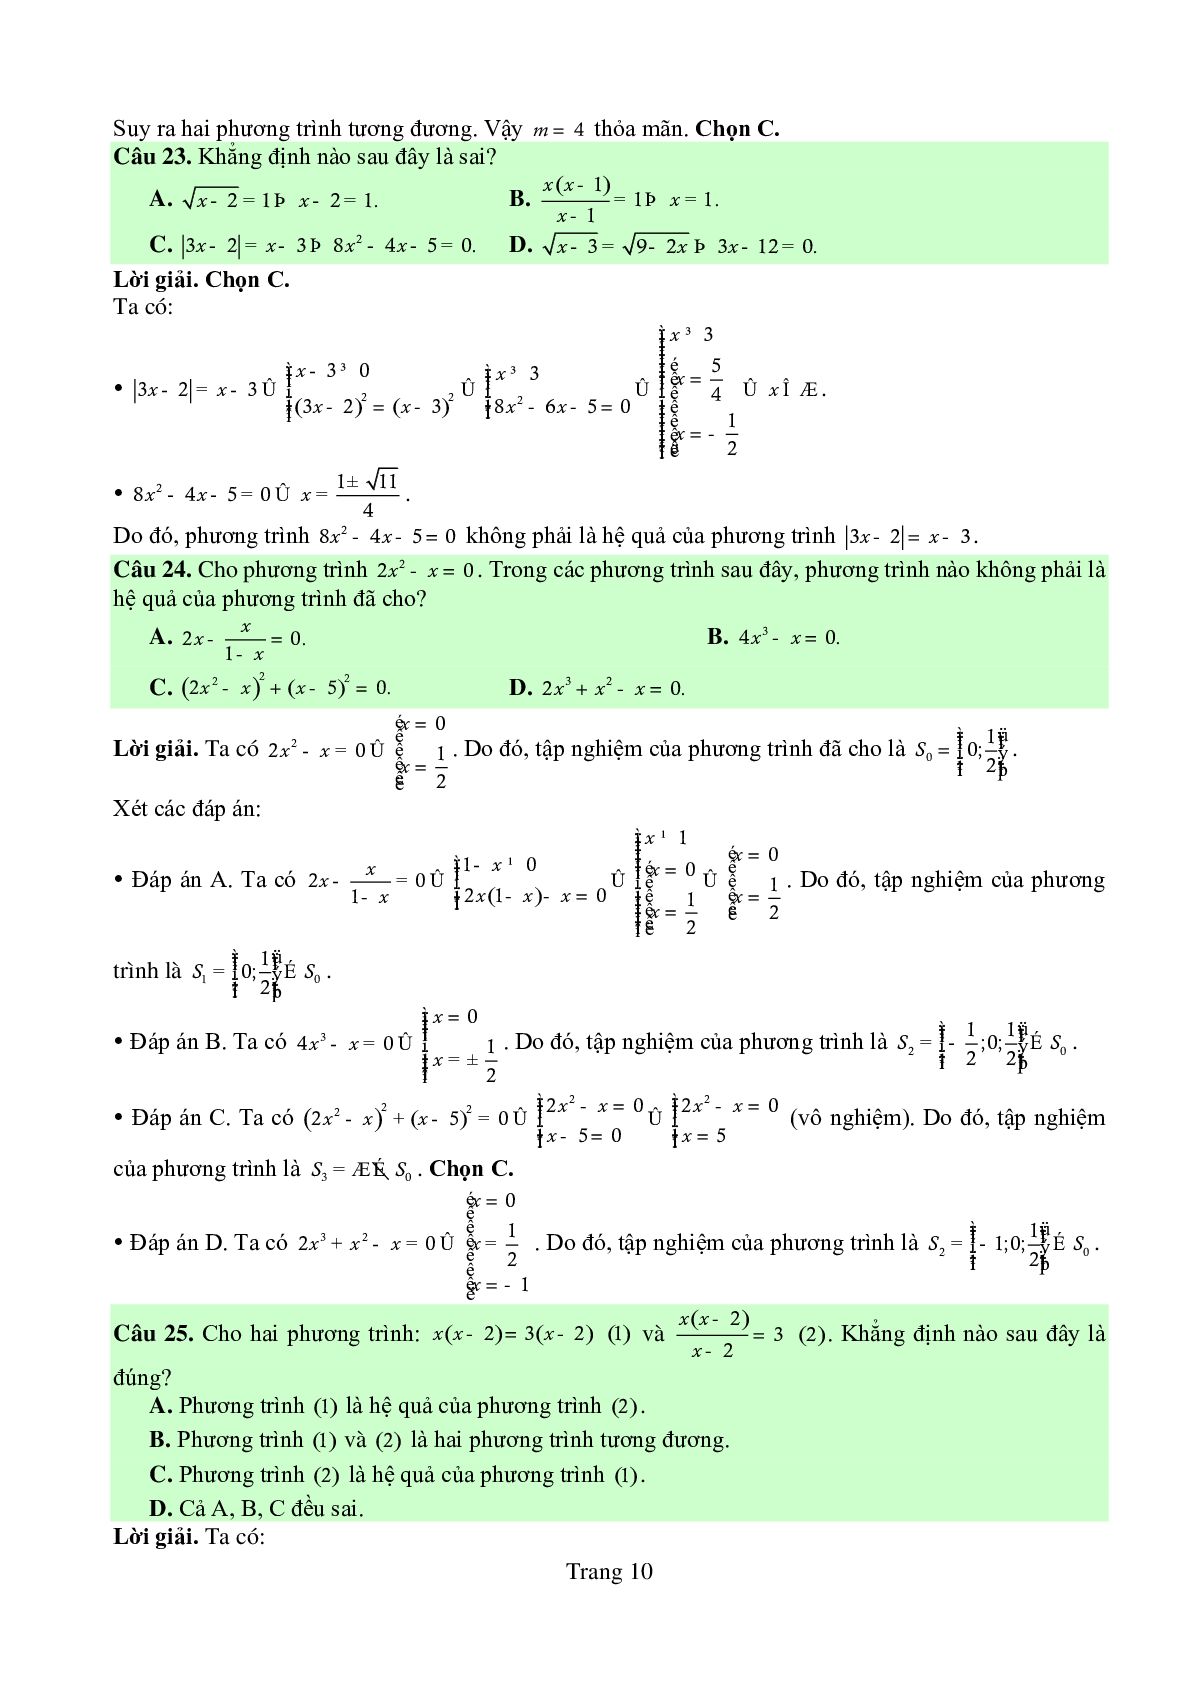 Chuyên đề: Phương trình môn Toán lớp 10 có lời giải chi tiết (trang 10)